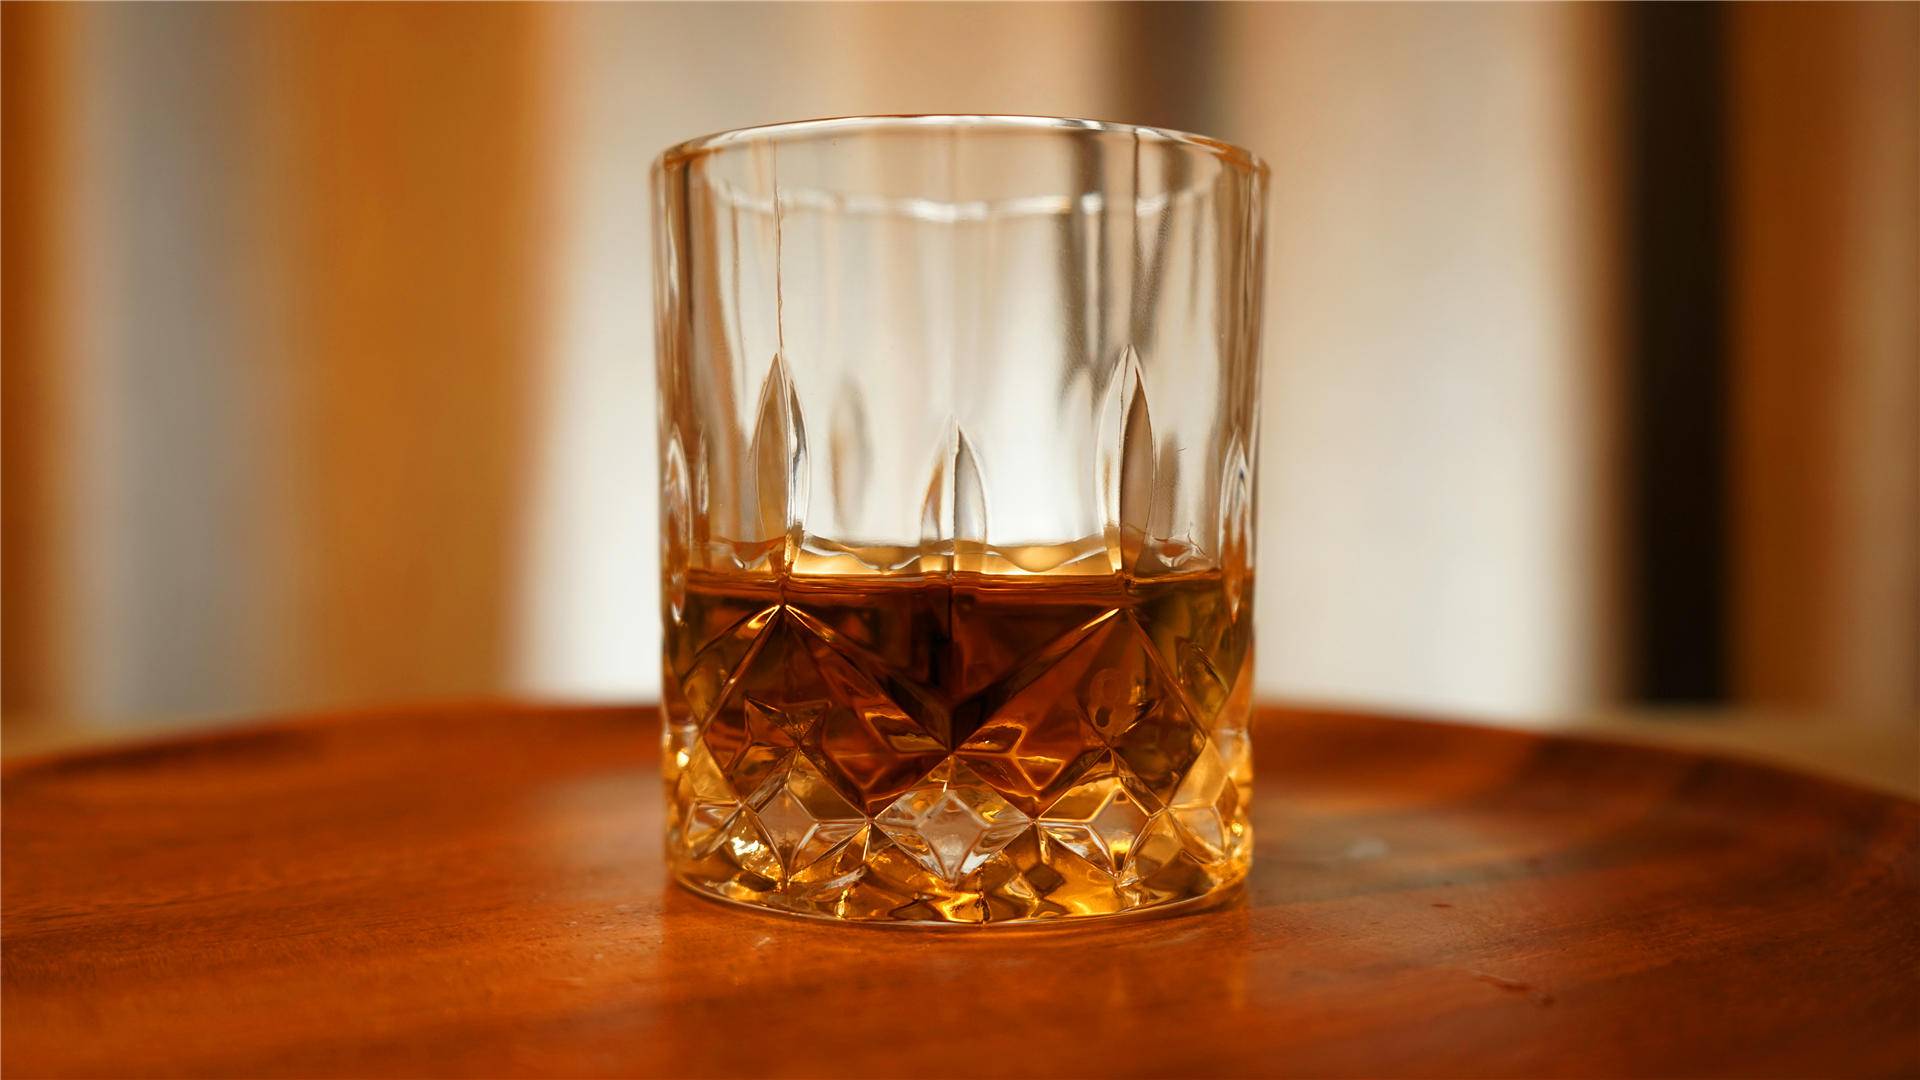 年轻人的第一杯威士忌——牛头梗veto限量版单一麦芽威士忌初体验